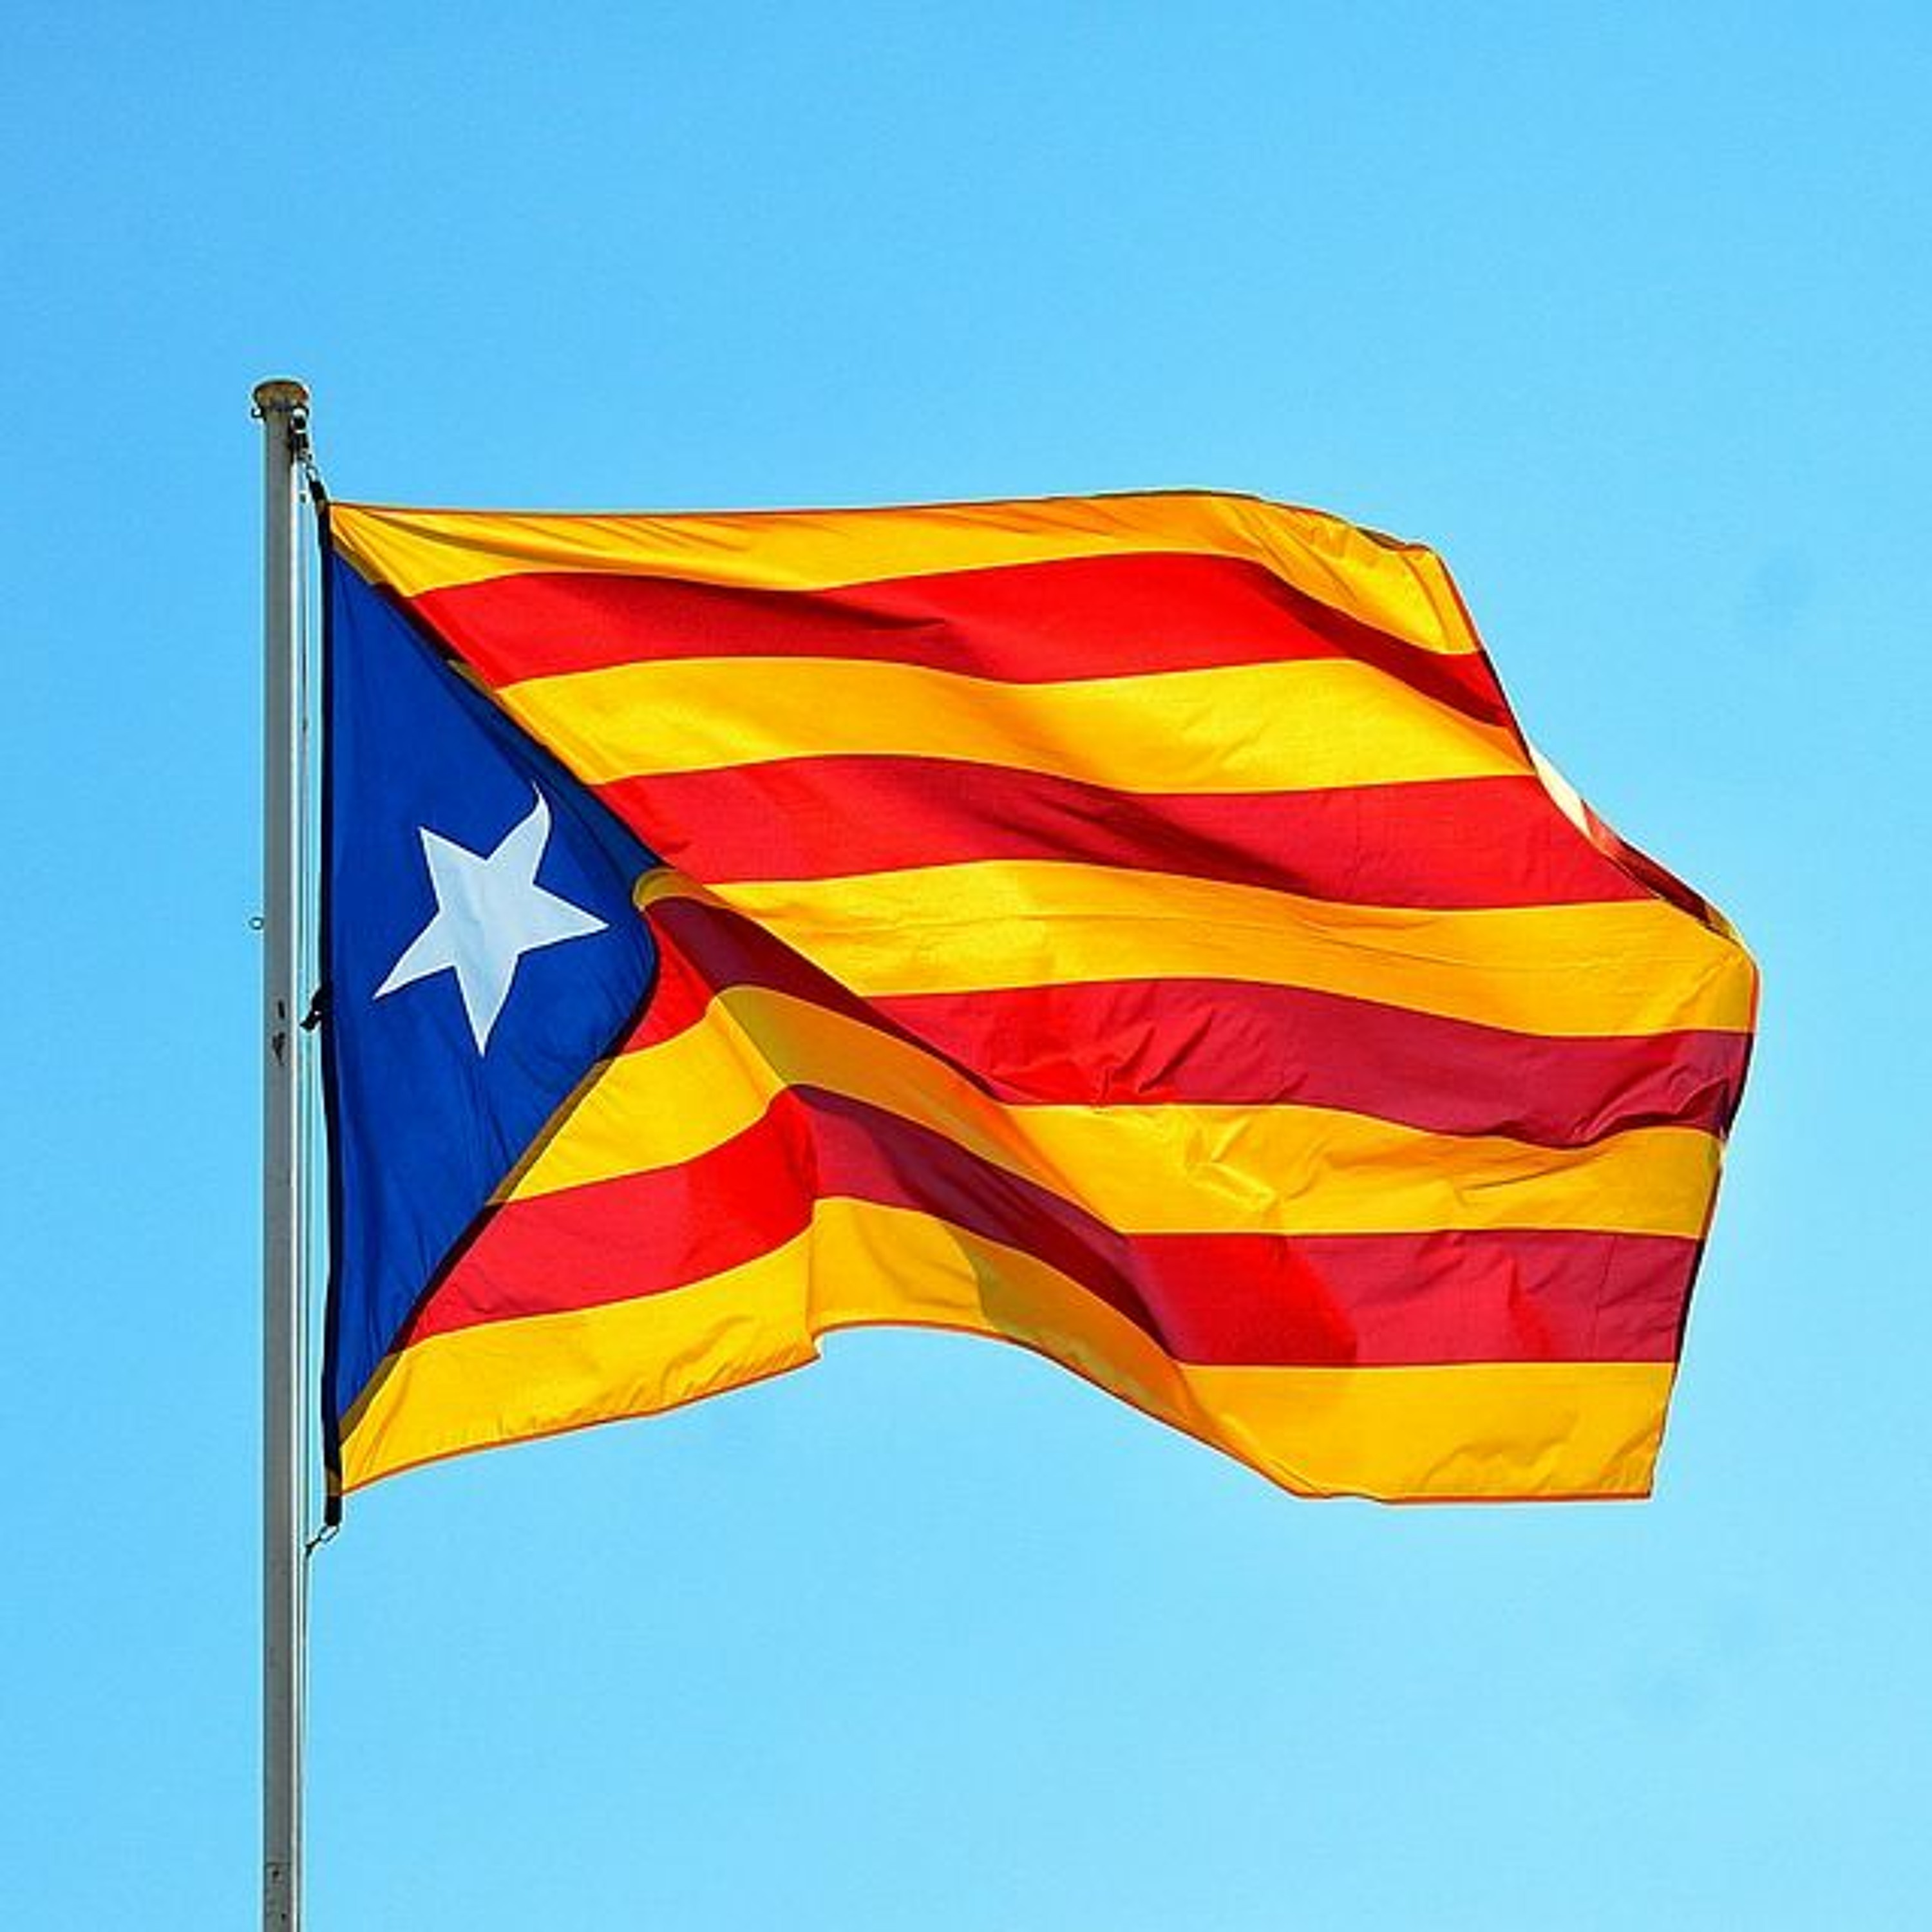 Goodbye to Catalonia?